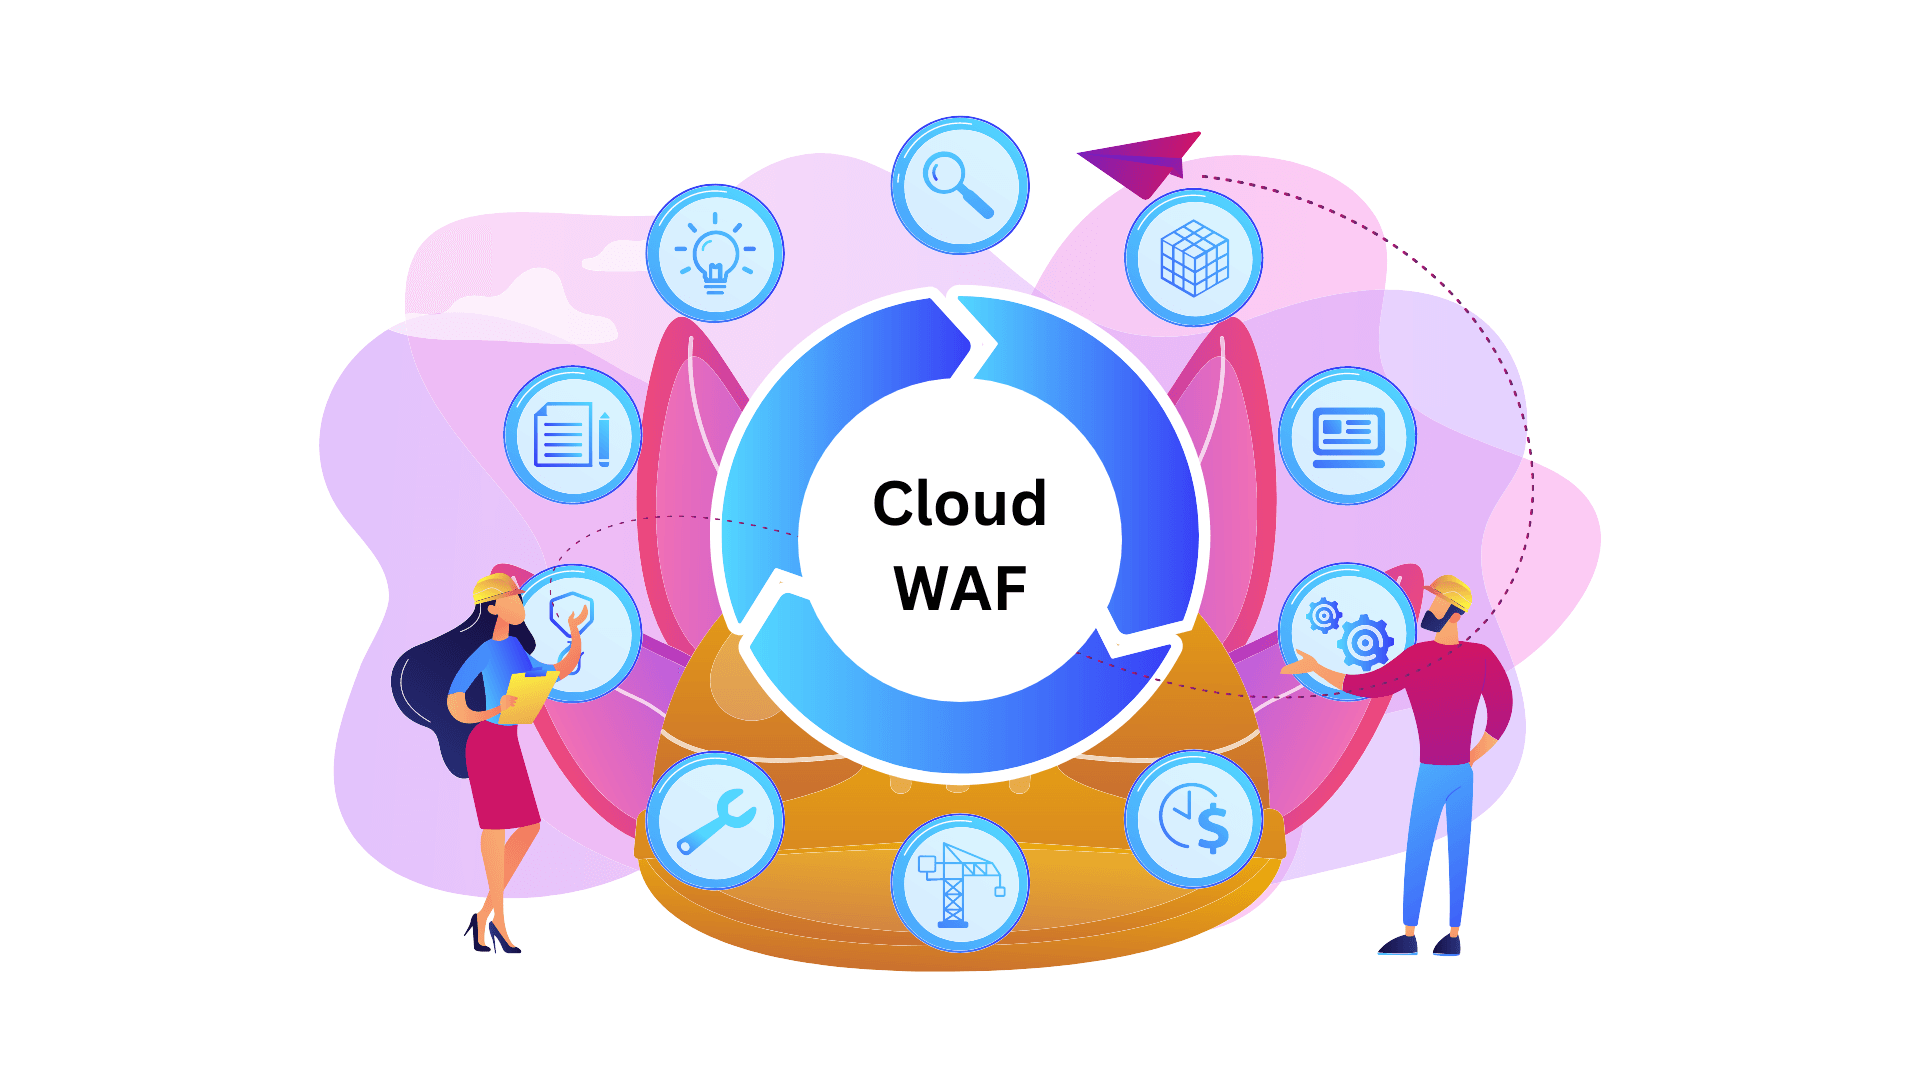 2. Ưu điểm của Cloud WAF so với các giải pháp bảo mật khác